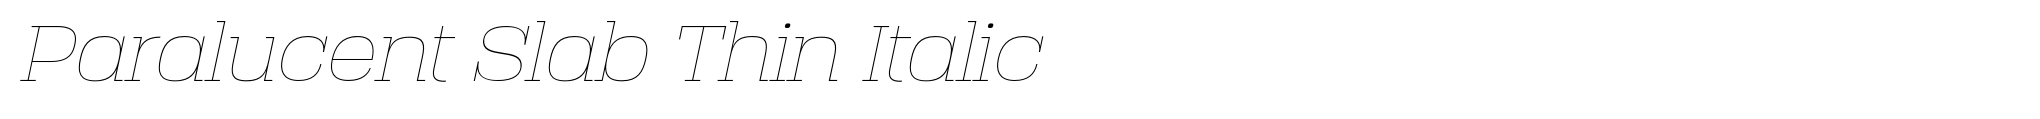 Paralucent Slab Thin Italic image